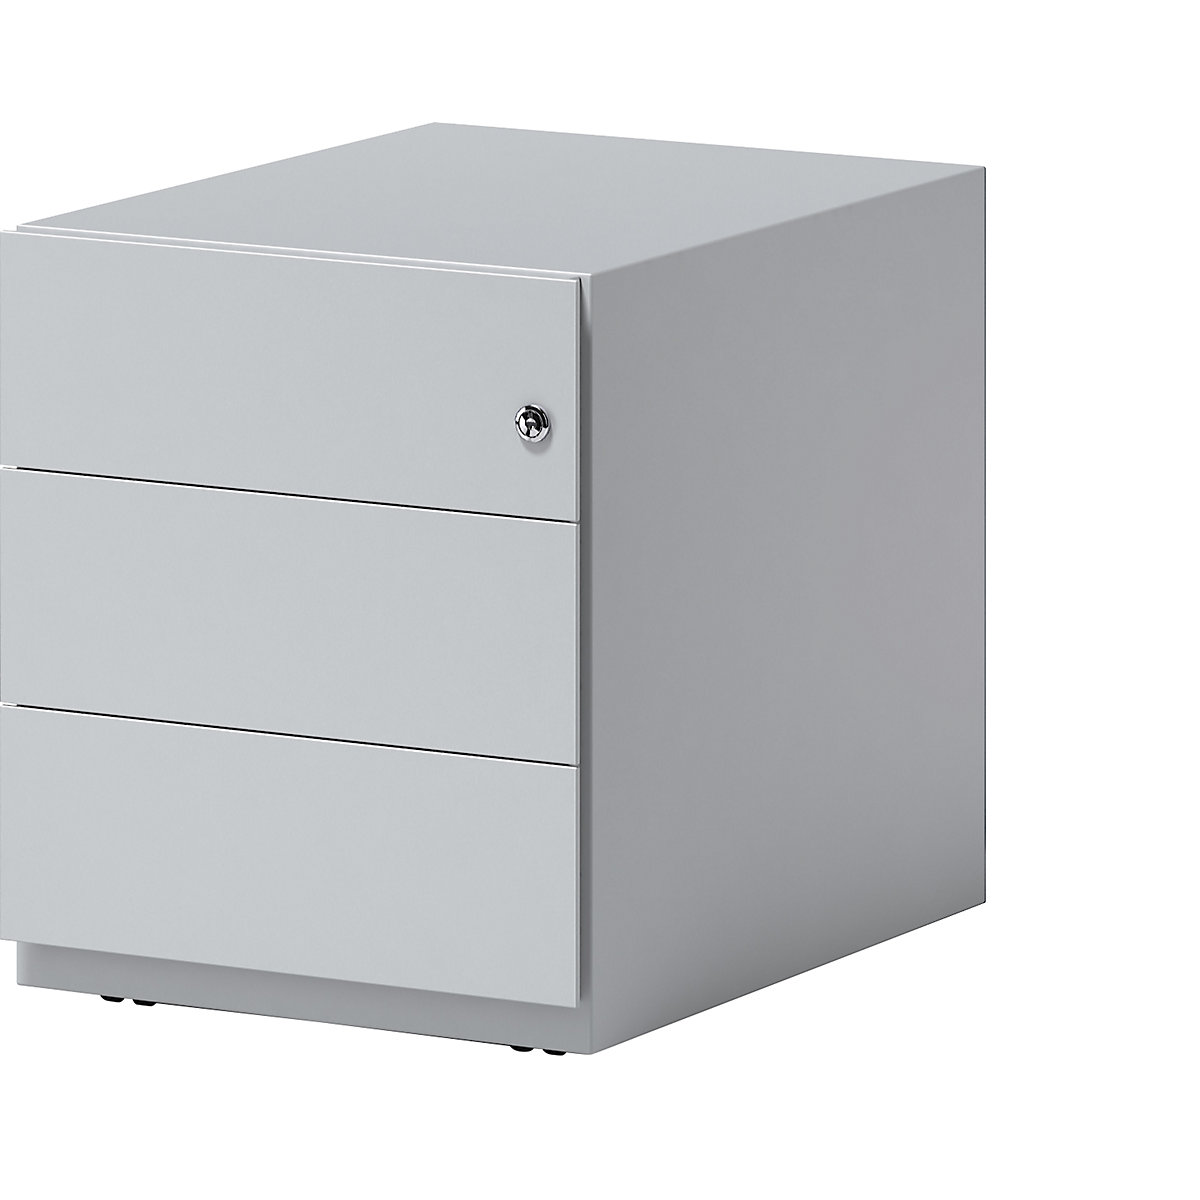 BISLEY Rollcontainer Note™, mit 3 Universalschubladen, HxBxT 495 x 420 x 565 mm, mit Griffleiste, lichtgrau